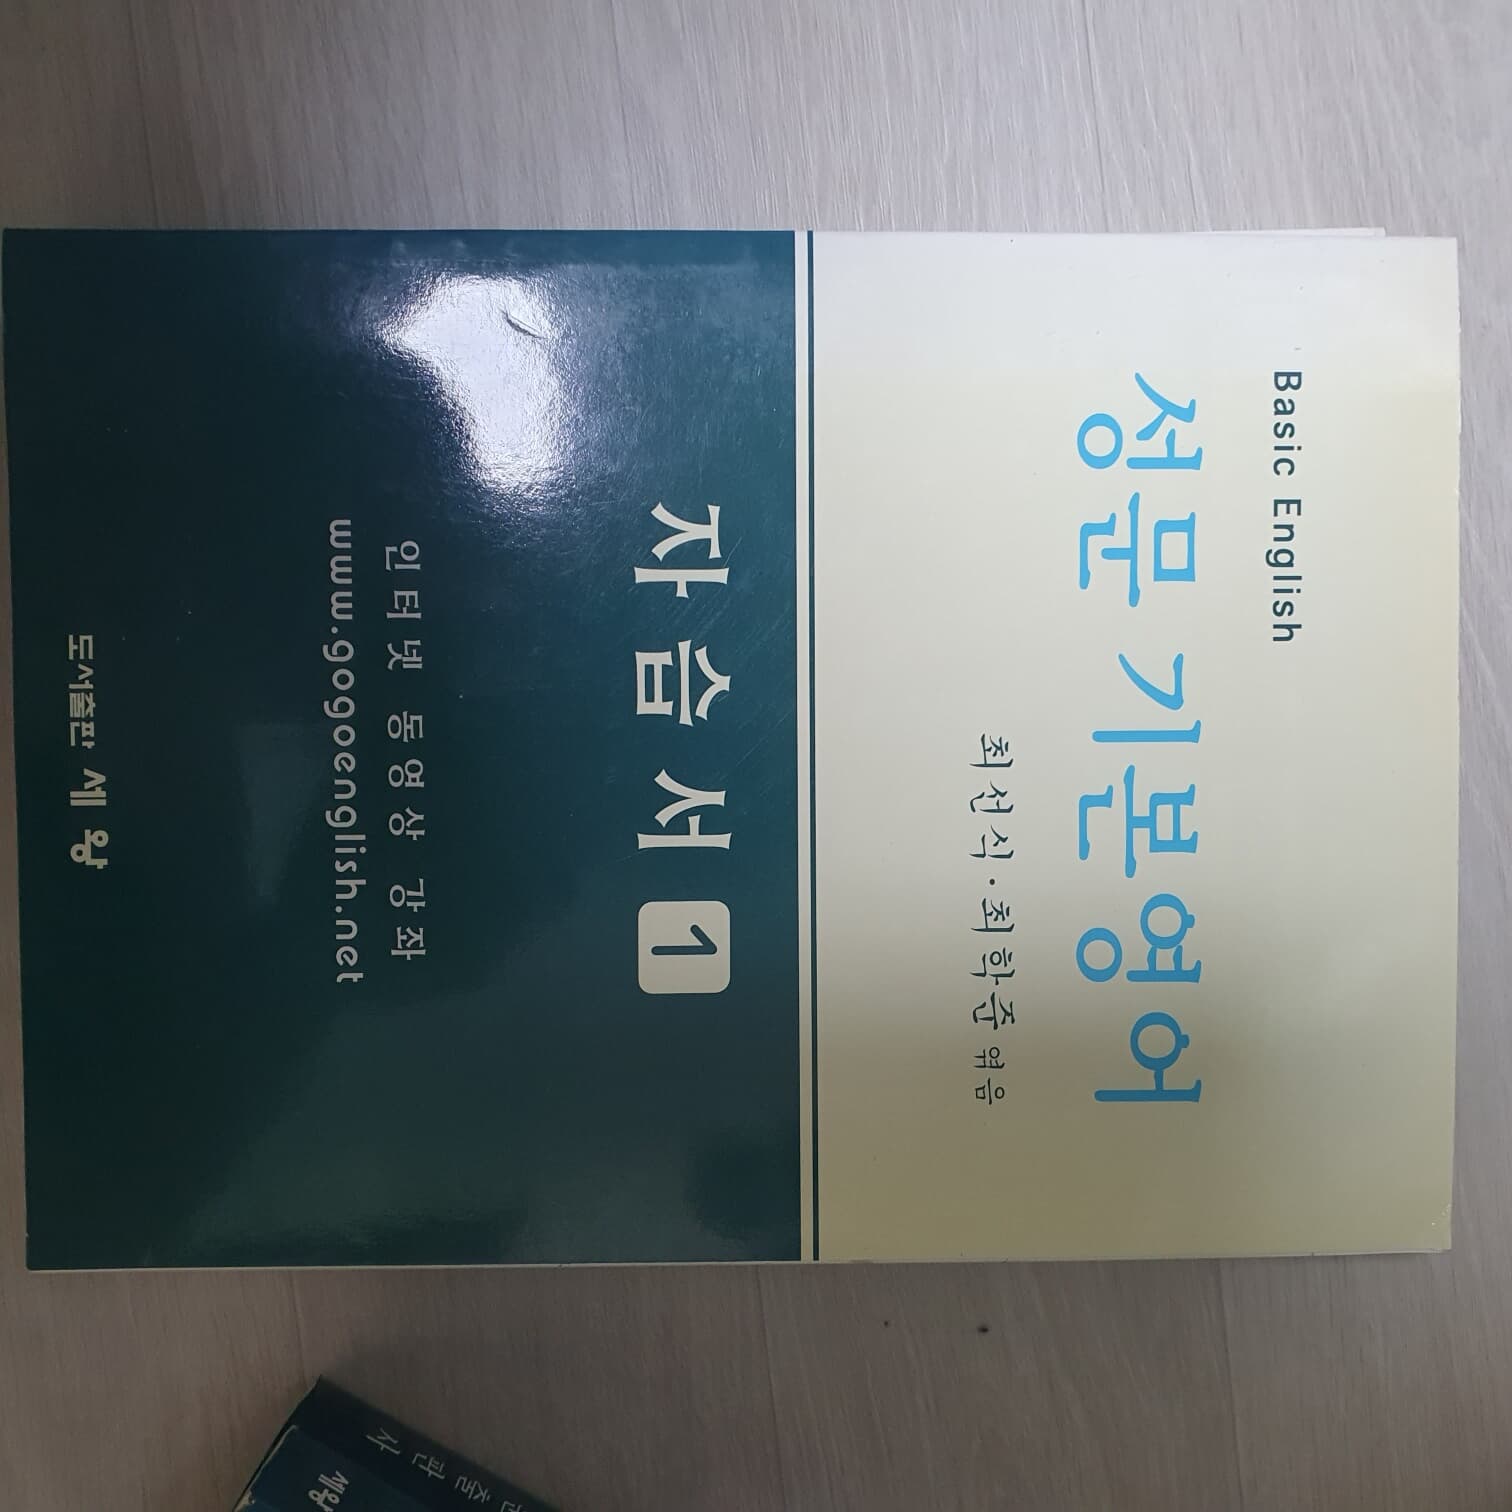 성문기본영어( 양장본) 동영상강의,학습서 2권 모두 포함